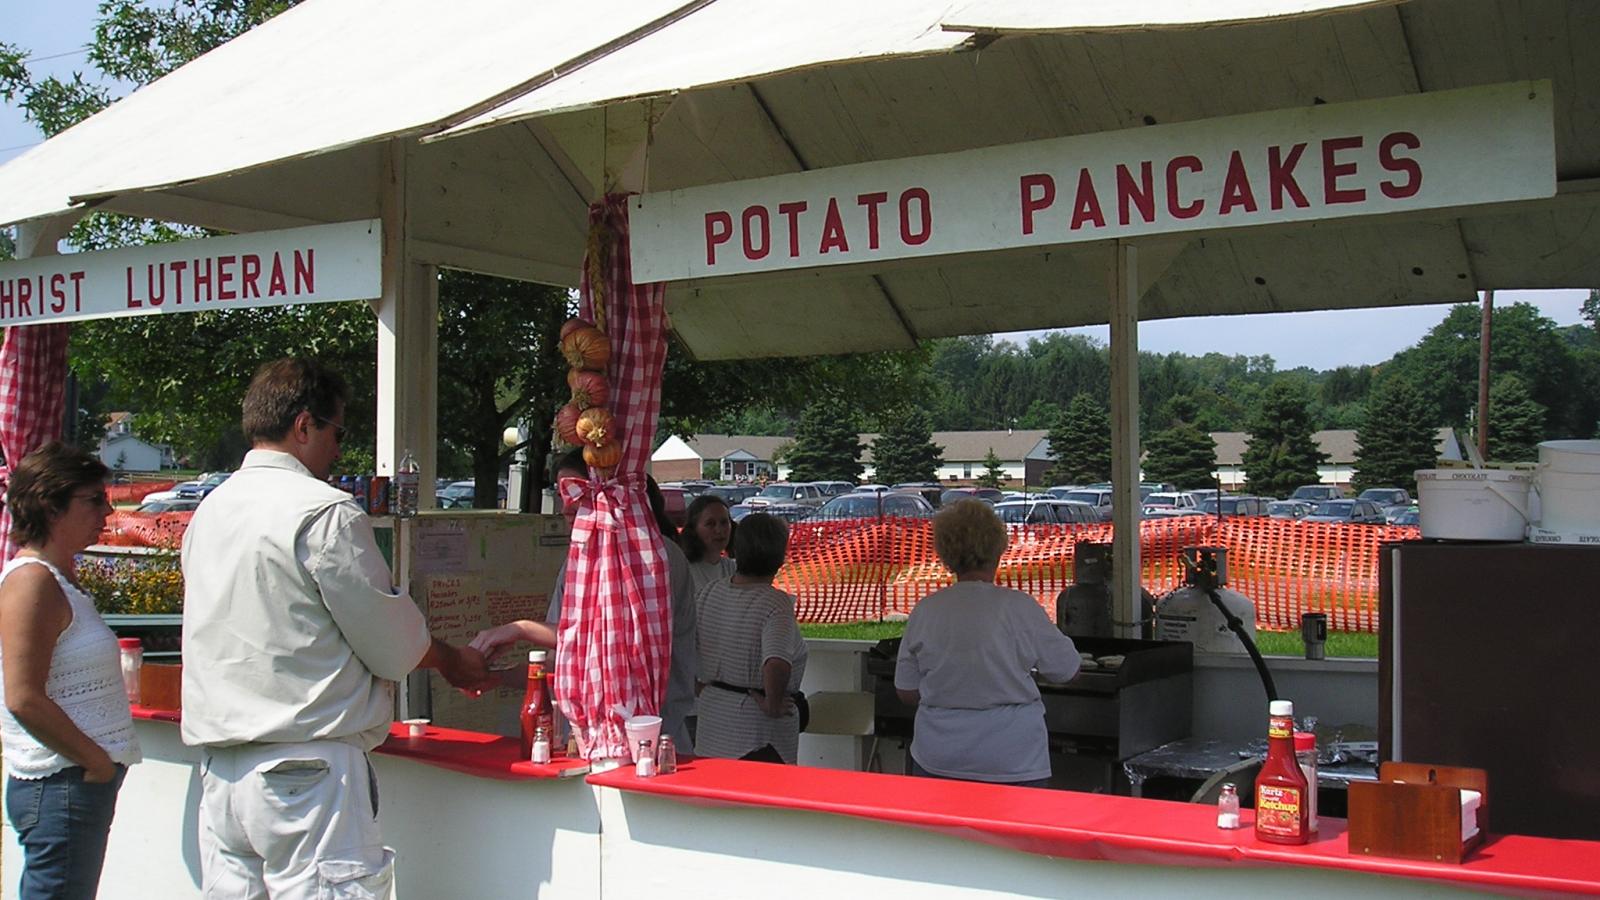 Mantua Potato Festival in Portage County, OH